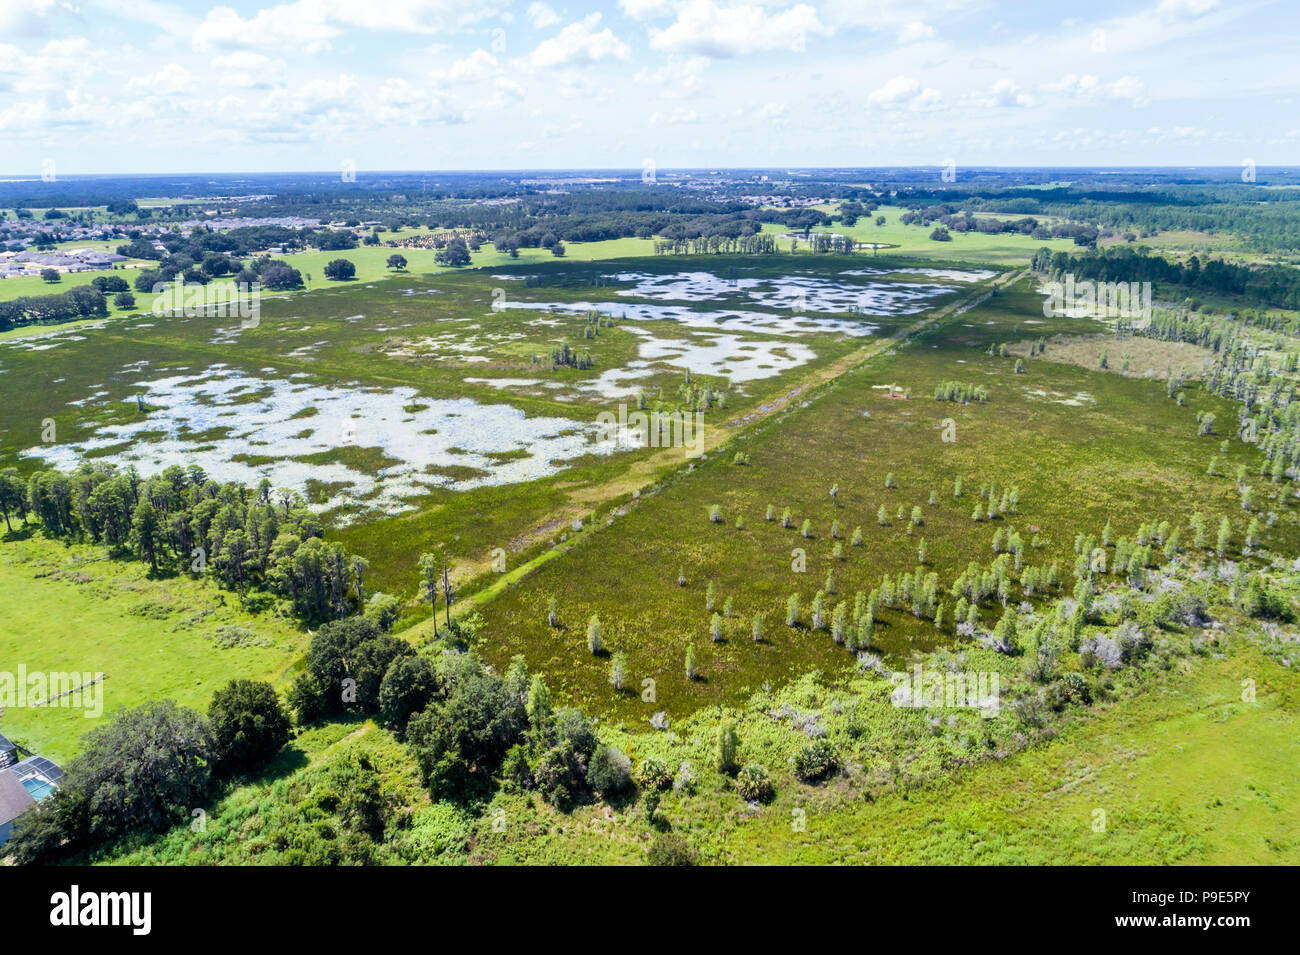 Orlando Florida, Davenport, Hilochee Wildlife Management Area Feuchtgebiete Hochland Sumpfbecken nasse Prärie, Green Swamp Ökosystem, Luftaufnahme von oben, FL1807 Stockfoto